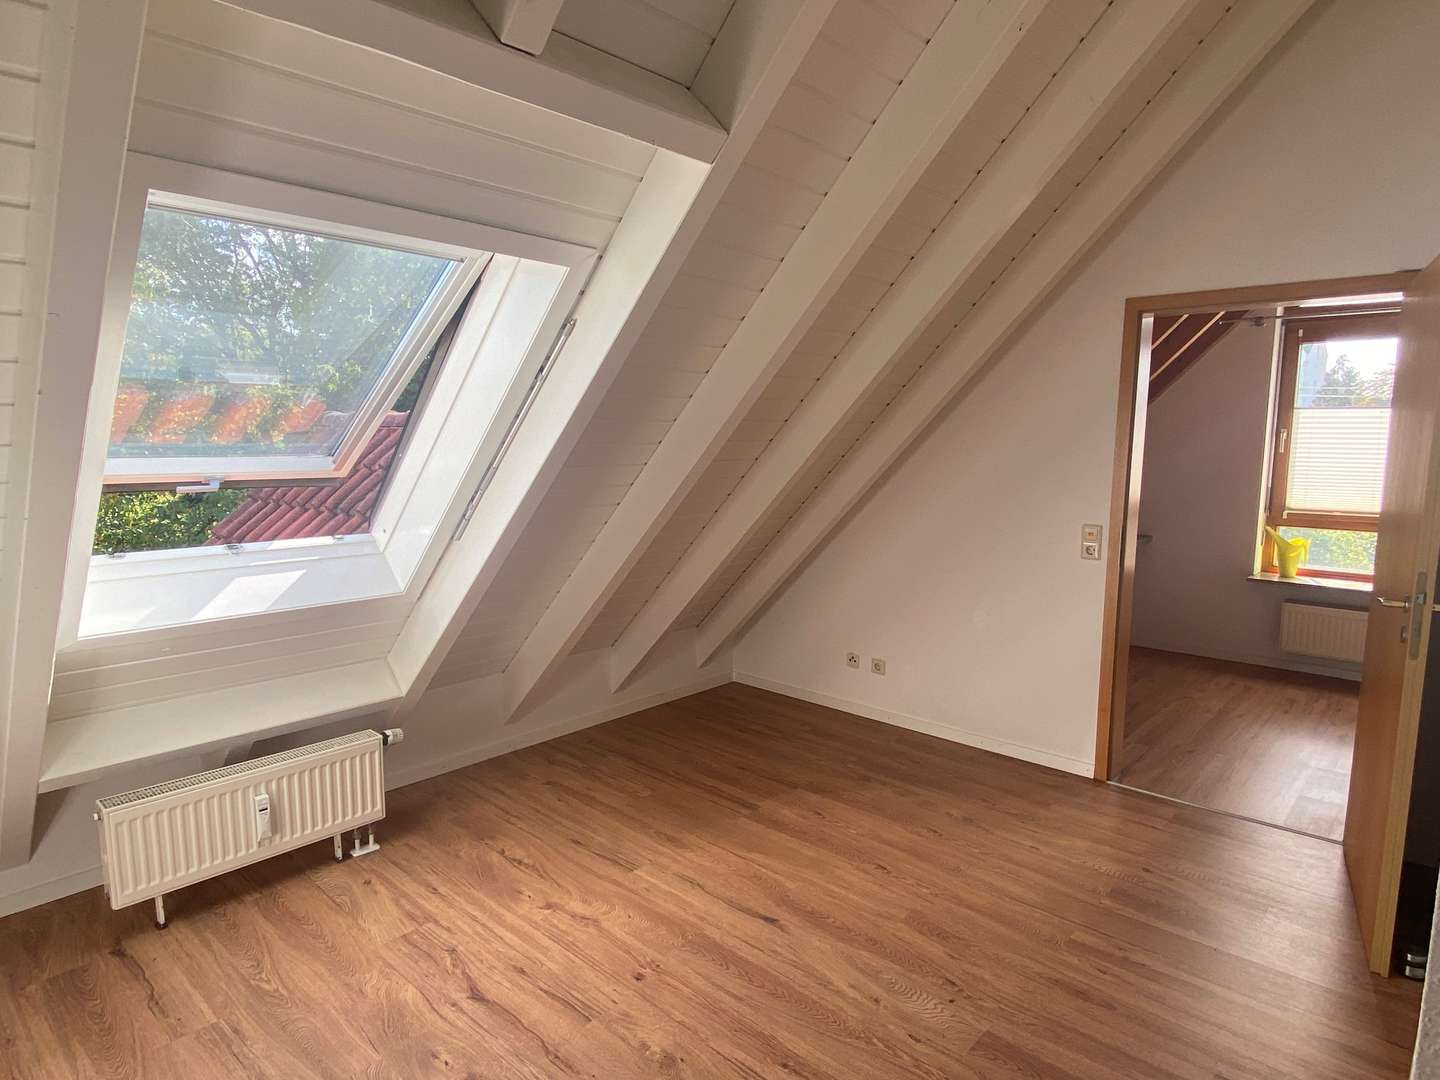 Dachstudio - Maisonette-Wohnung in 73274 Notzingen mit 76m² kaufen